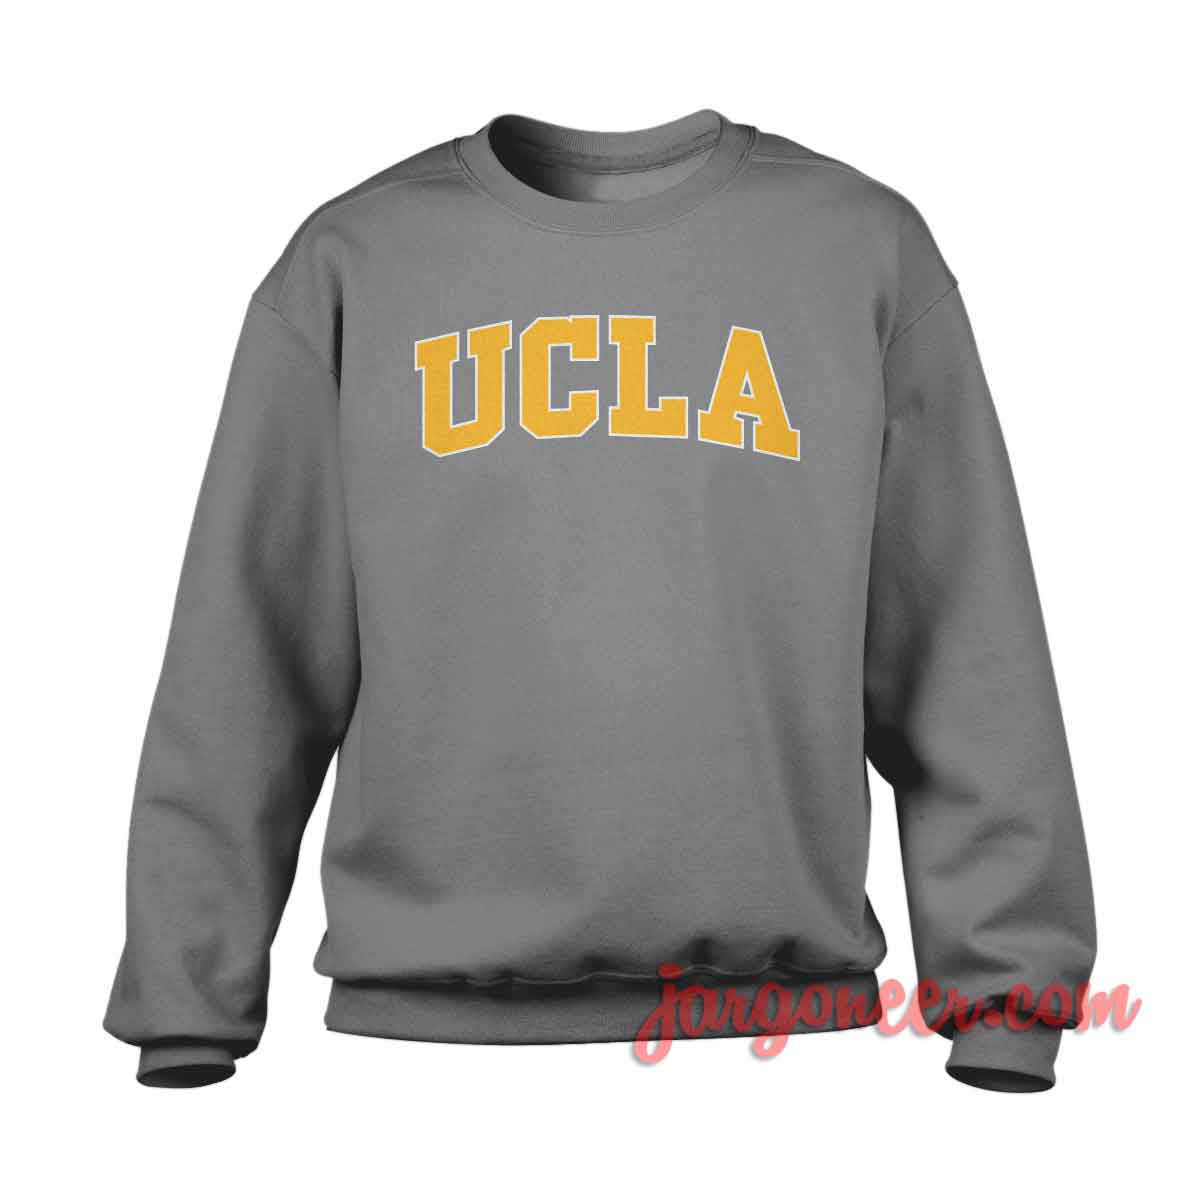 UCLA Logo - Shop Unique Graphic Cool Shirt Designs